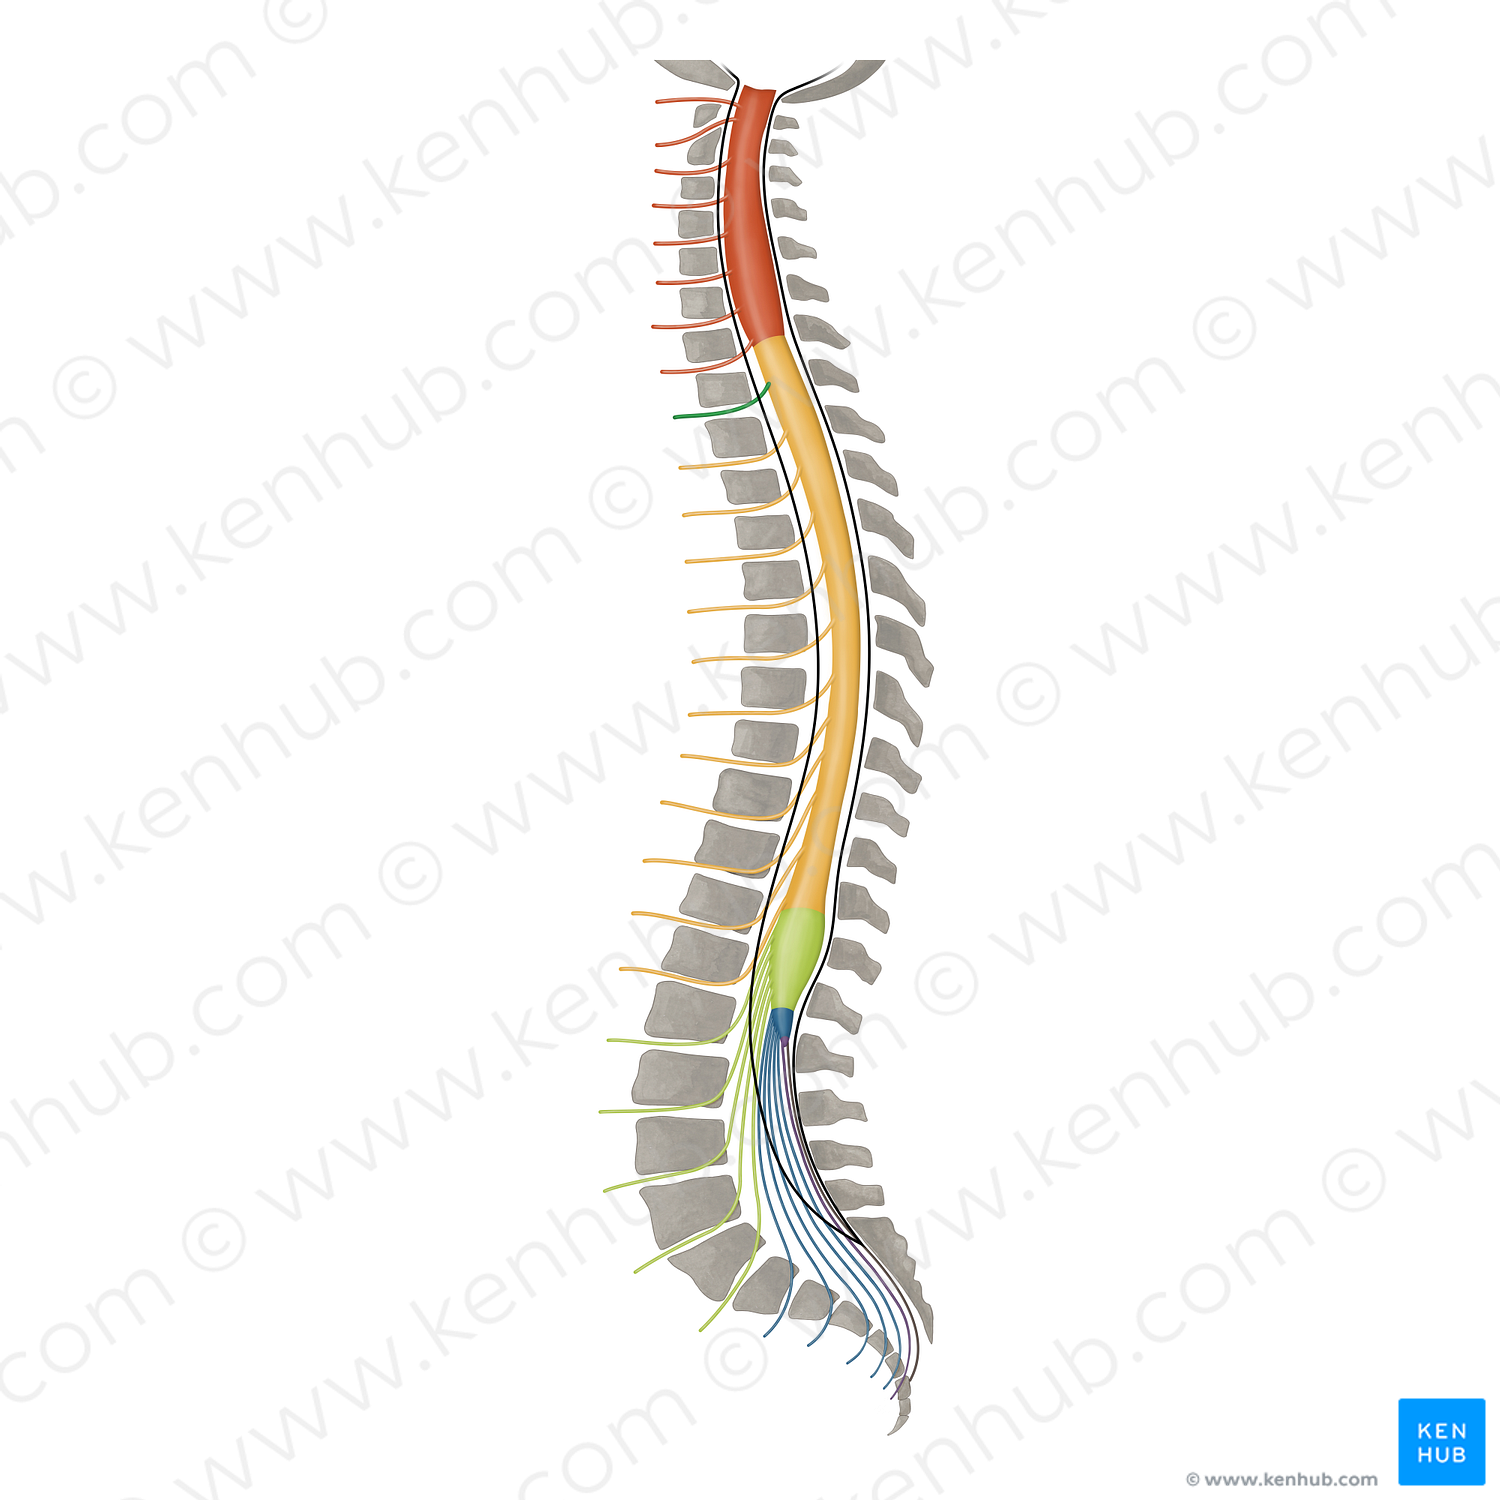 Spinal nerve T1 (#16423)